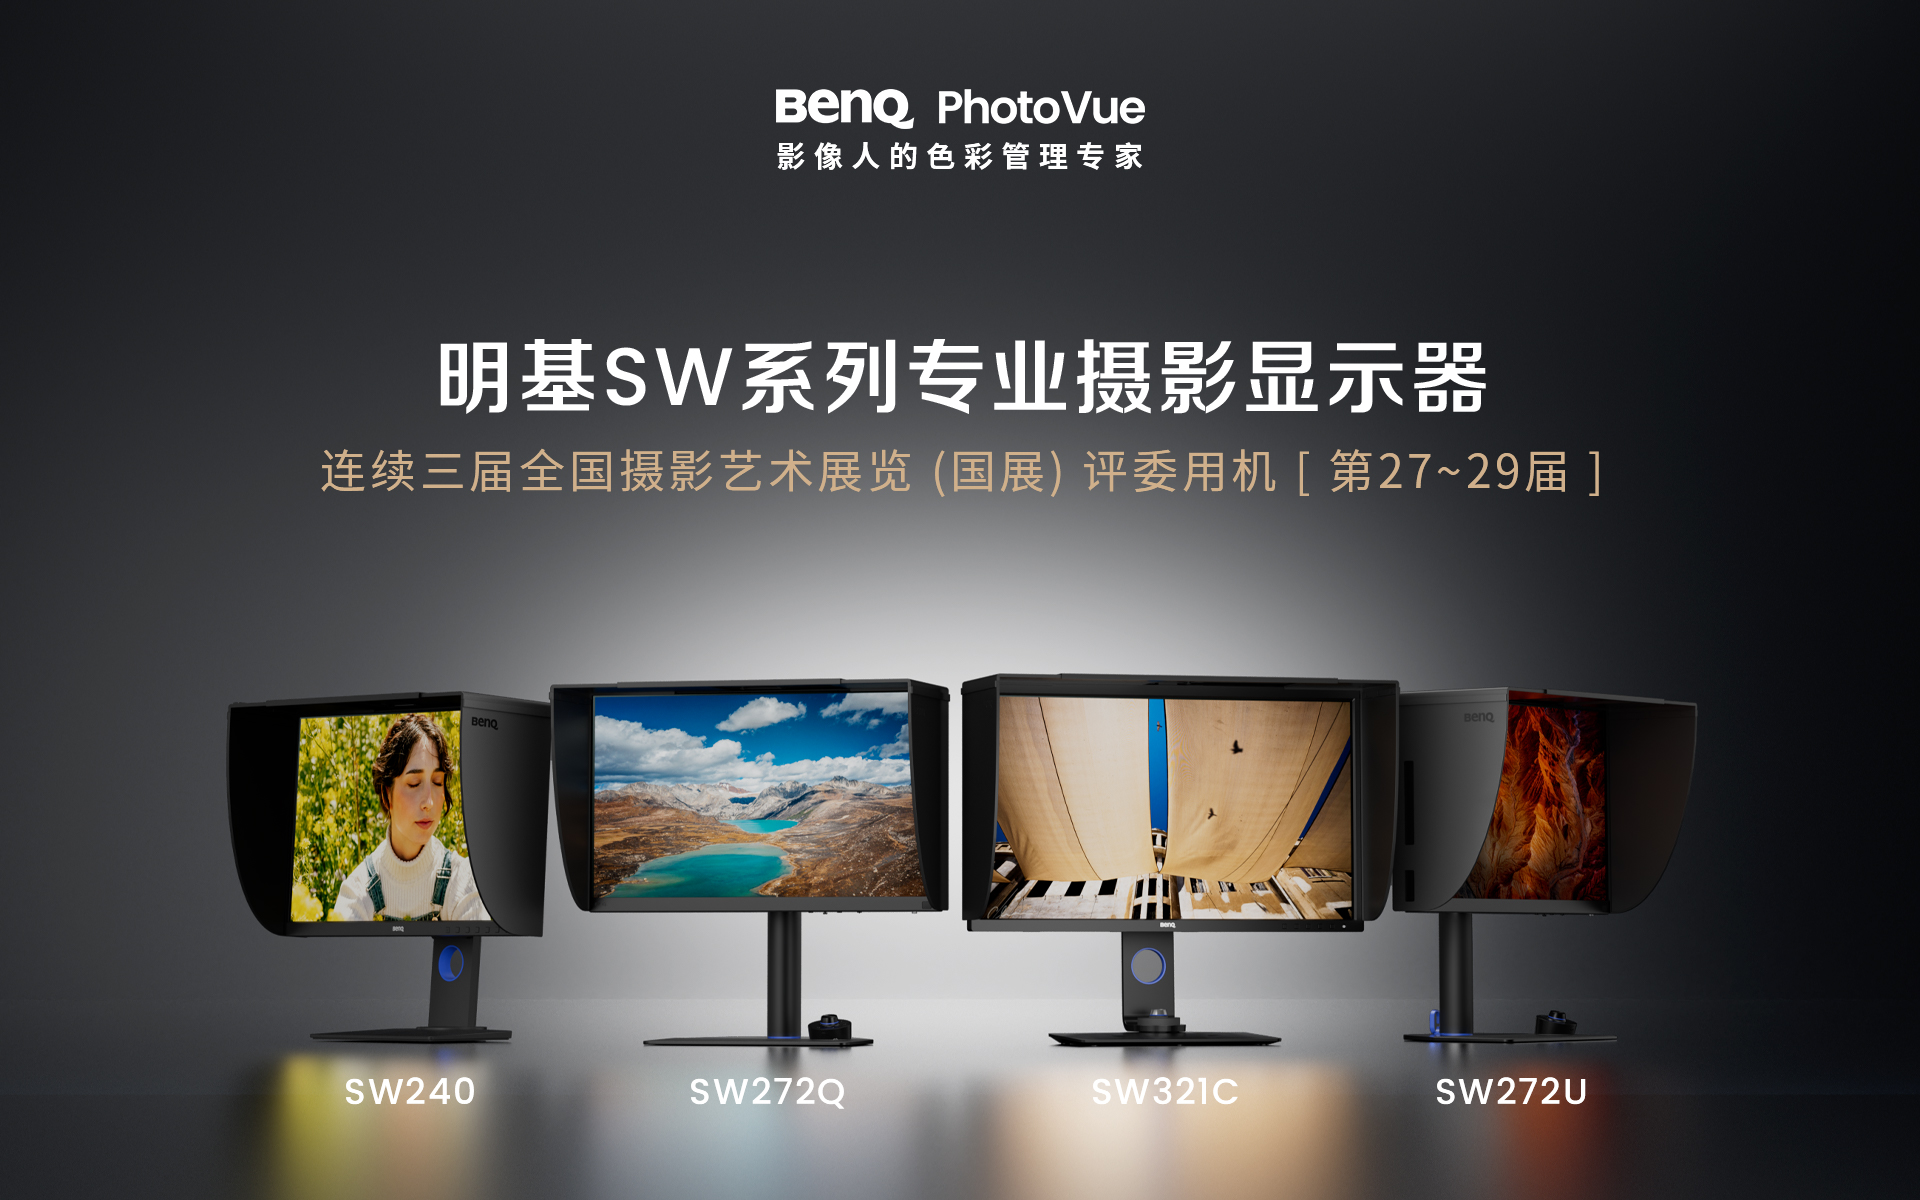 明基发布全新的SW242Q专业摄影显示器，重新定义专业后期设